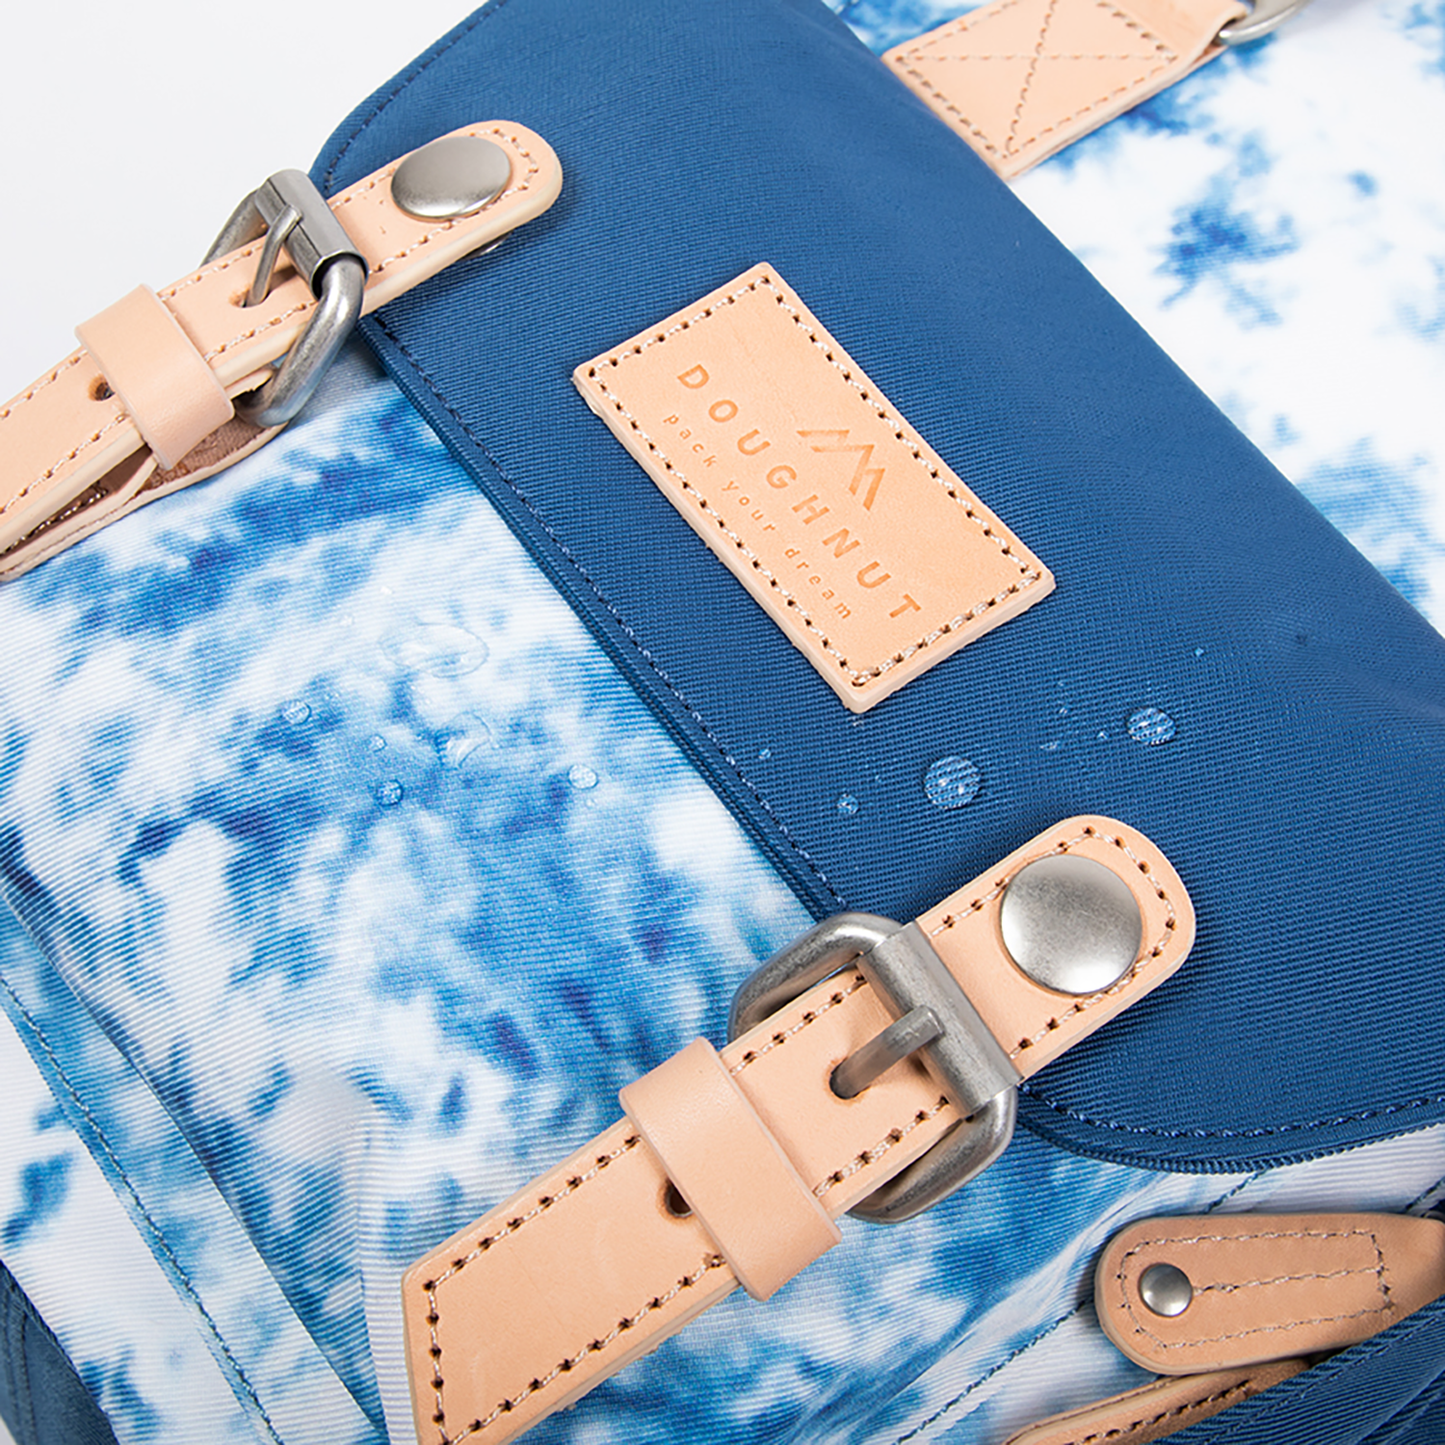 Macaroon Mini Tie-dye Series Steel Blue Backpack